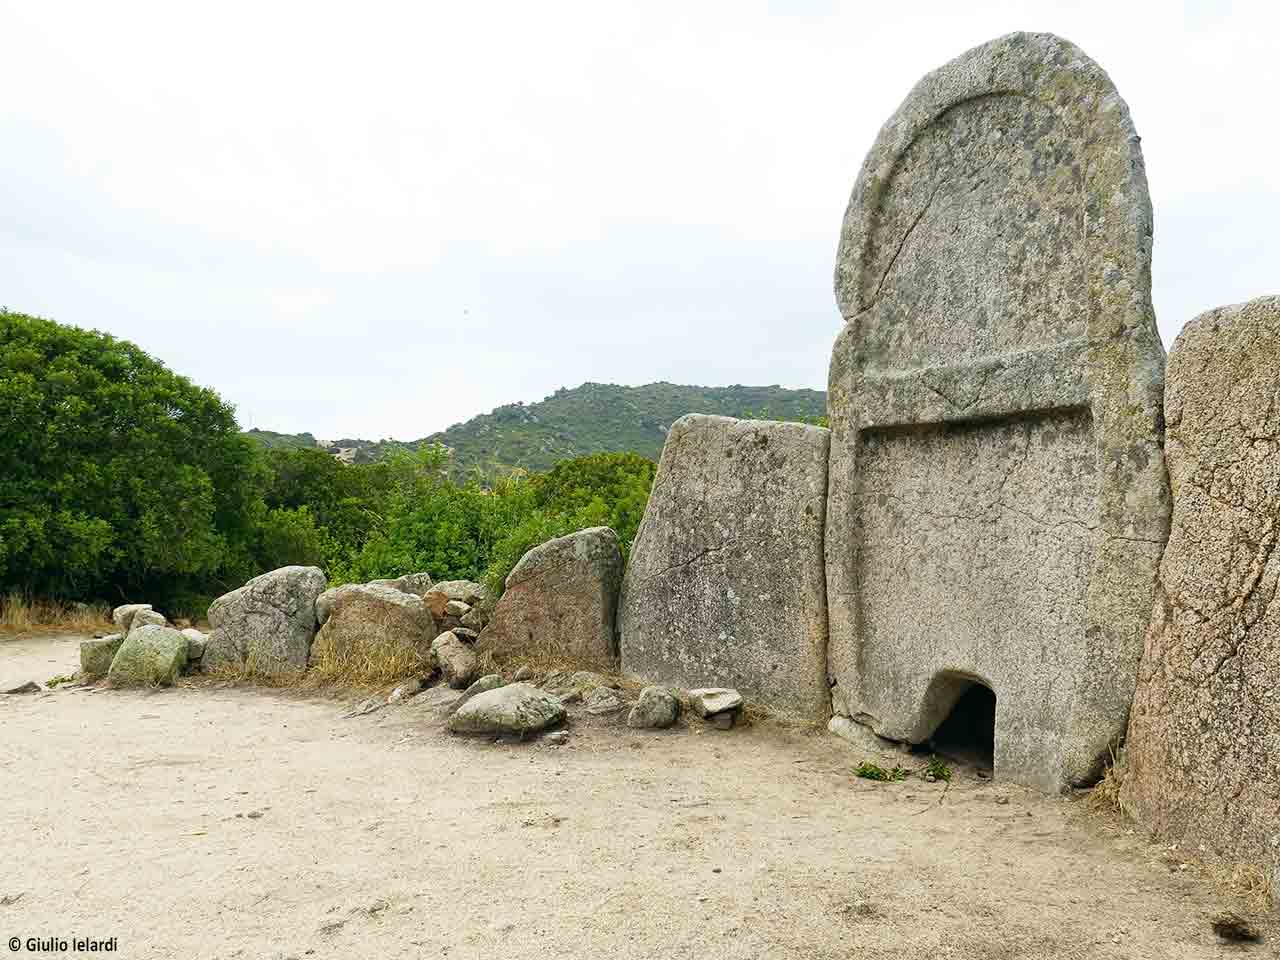 Sardegna in camper sulla costa orientale: la Tomba dei Giganti S’Ena ‘e Thomes vicino Dorgali